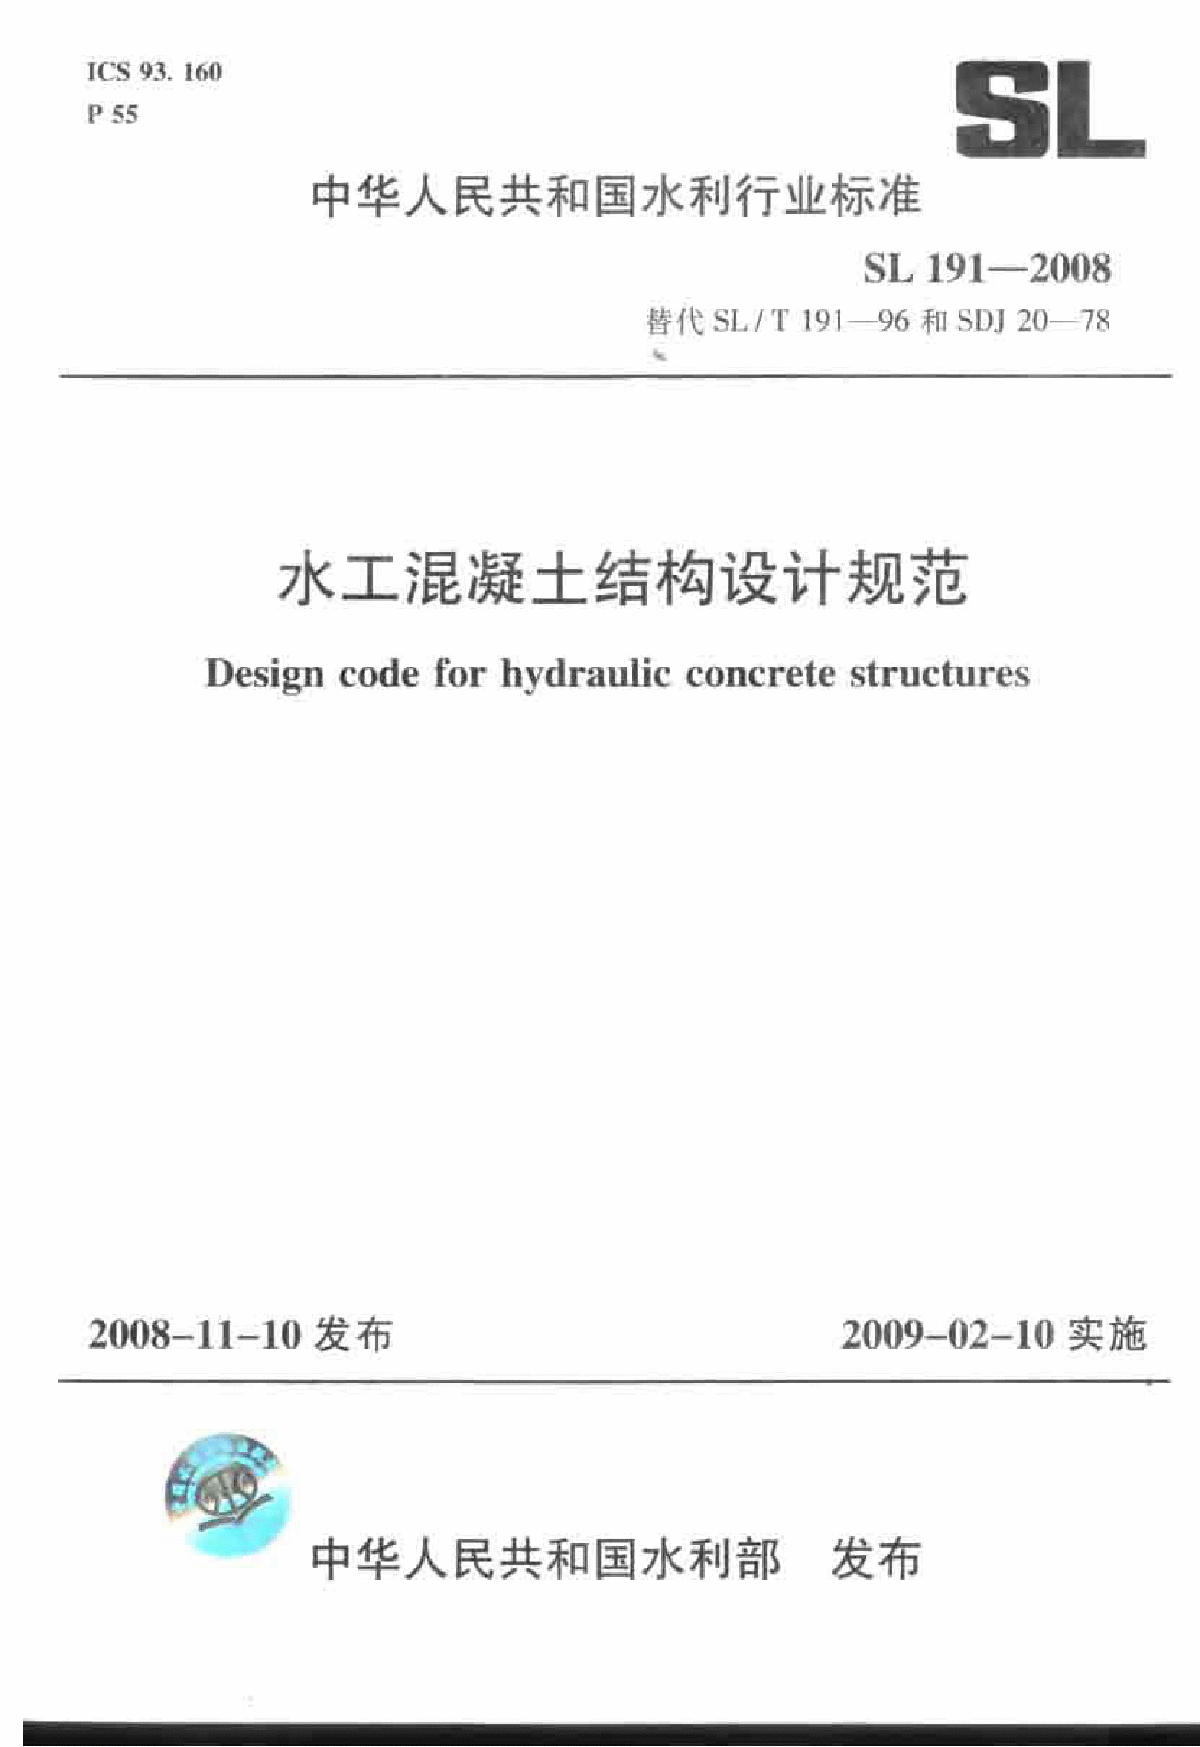 《水工混凝土结构设计规范》(SL 191-2008)